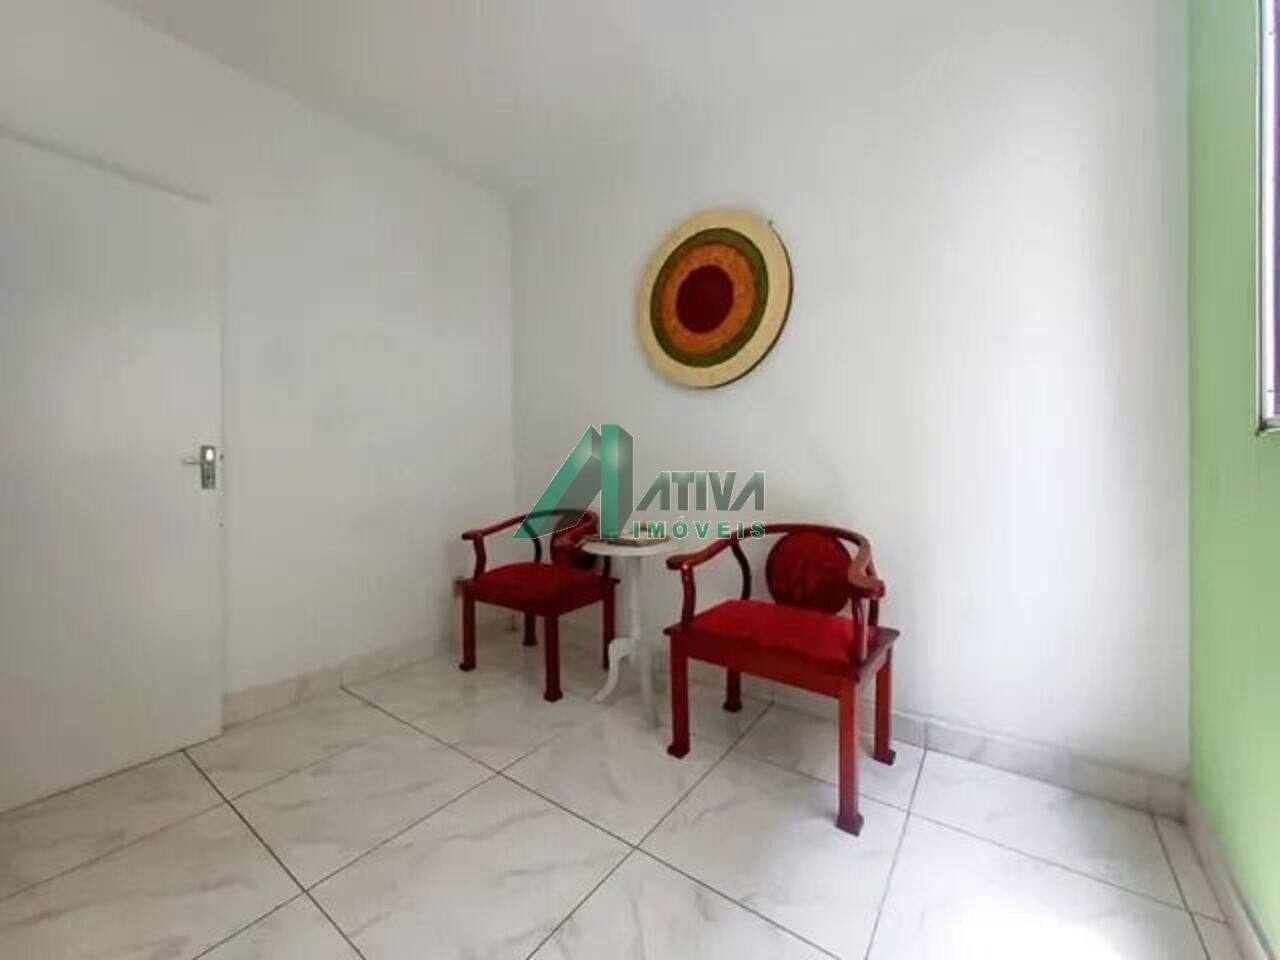 Apartamento Sagrada Família, Belo Horizonte - MG